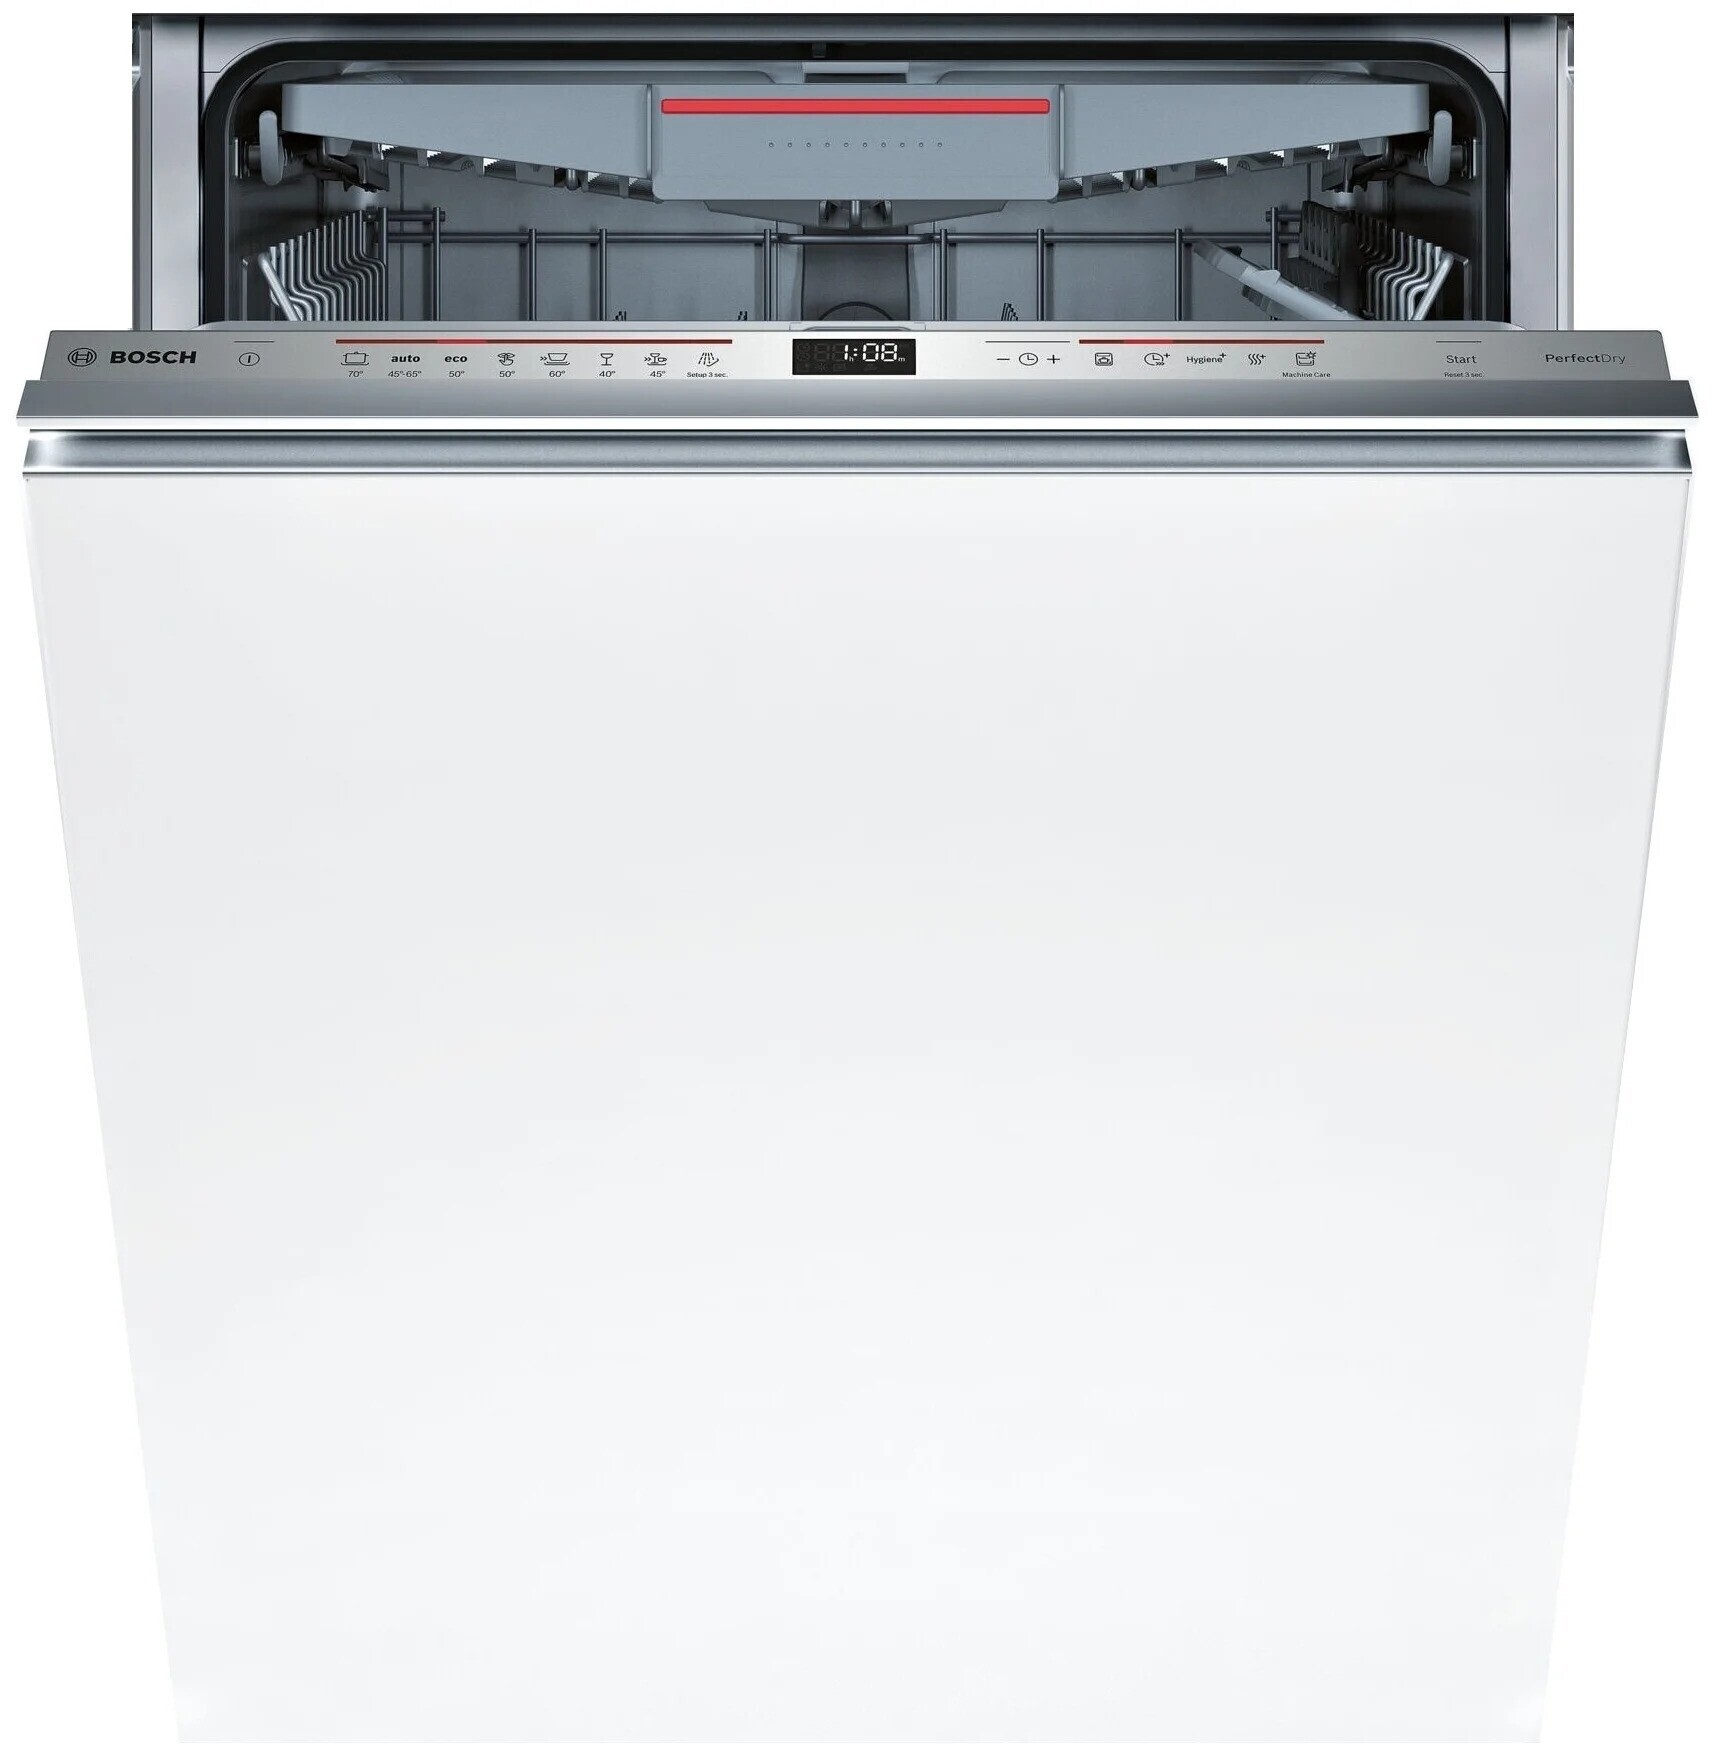 Встраиваемая посудомоечная машина 60 рейтинг качество. Посудомоечная машина встраиваемая 60 бош smv25ex01r. Bosch smv25ex01r. Посудомоечная машина Bosch SMV 25fx01 r. Встраиваемая посудомоечная машина 45 см Bosch serie | 6 Hygiene Dry spv6hmx3mr.